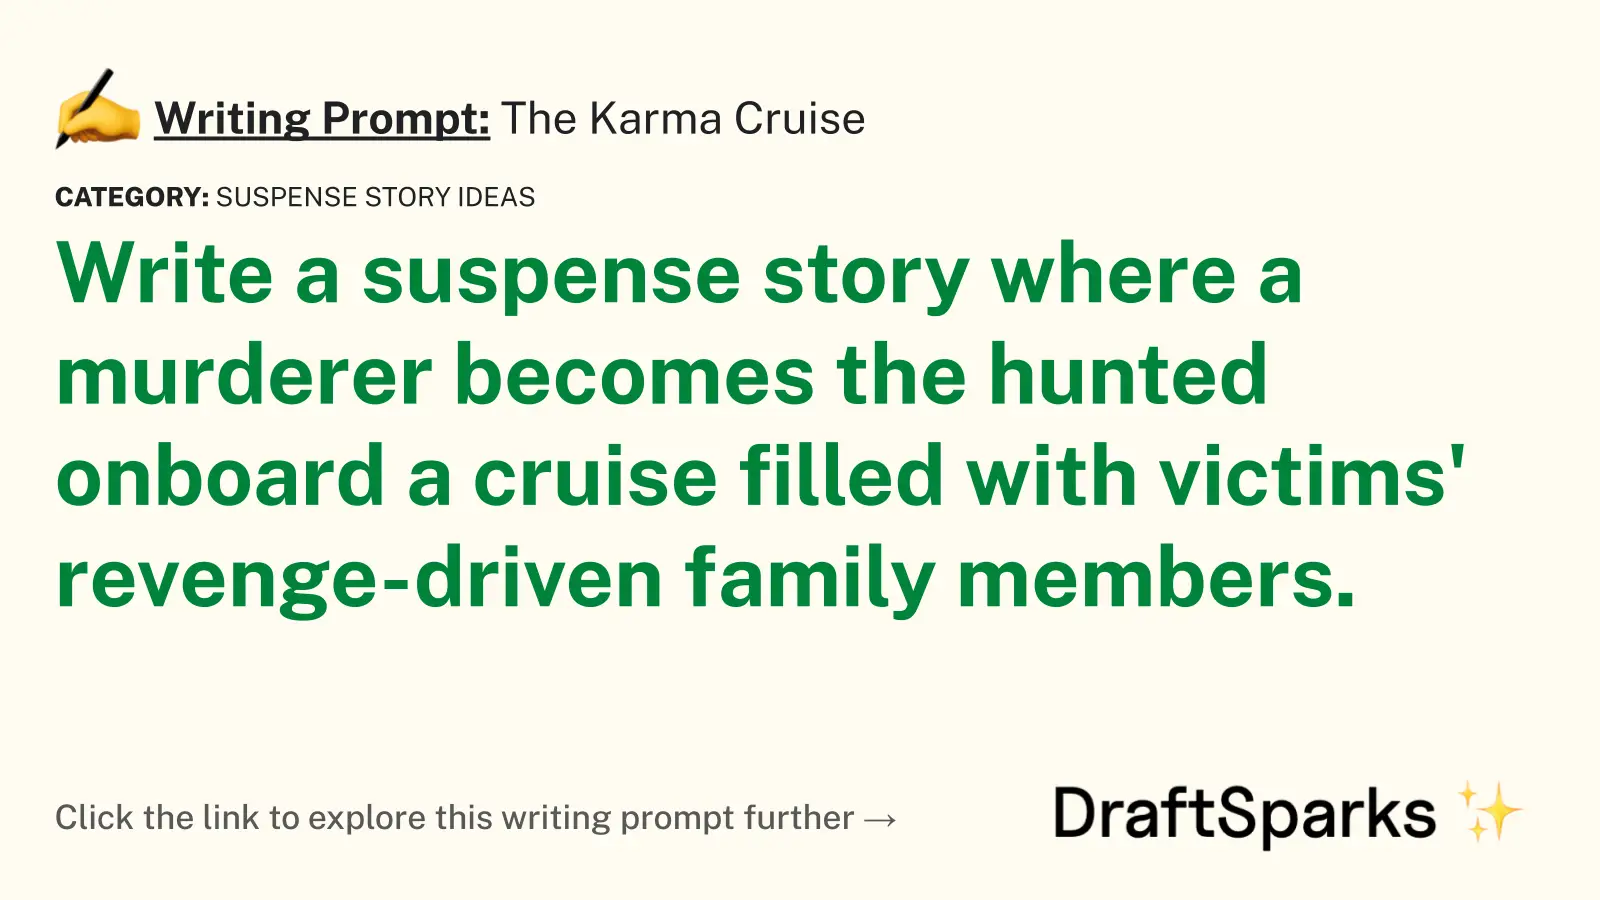 The Karma Cruise